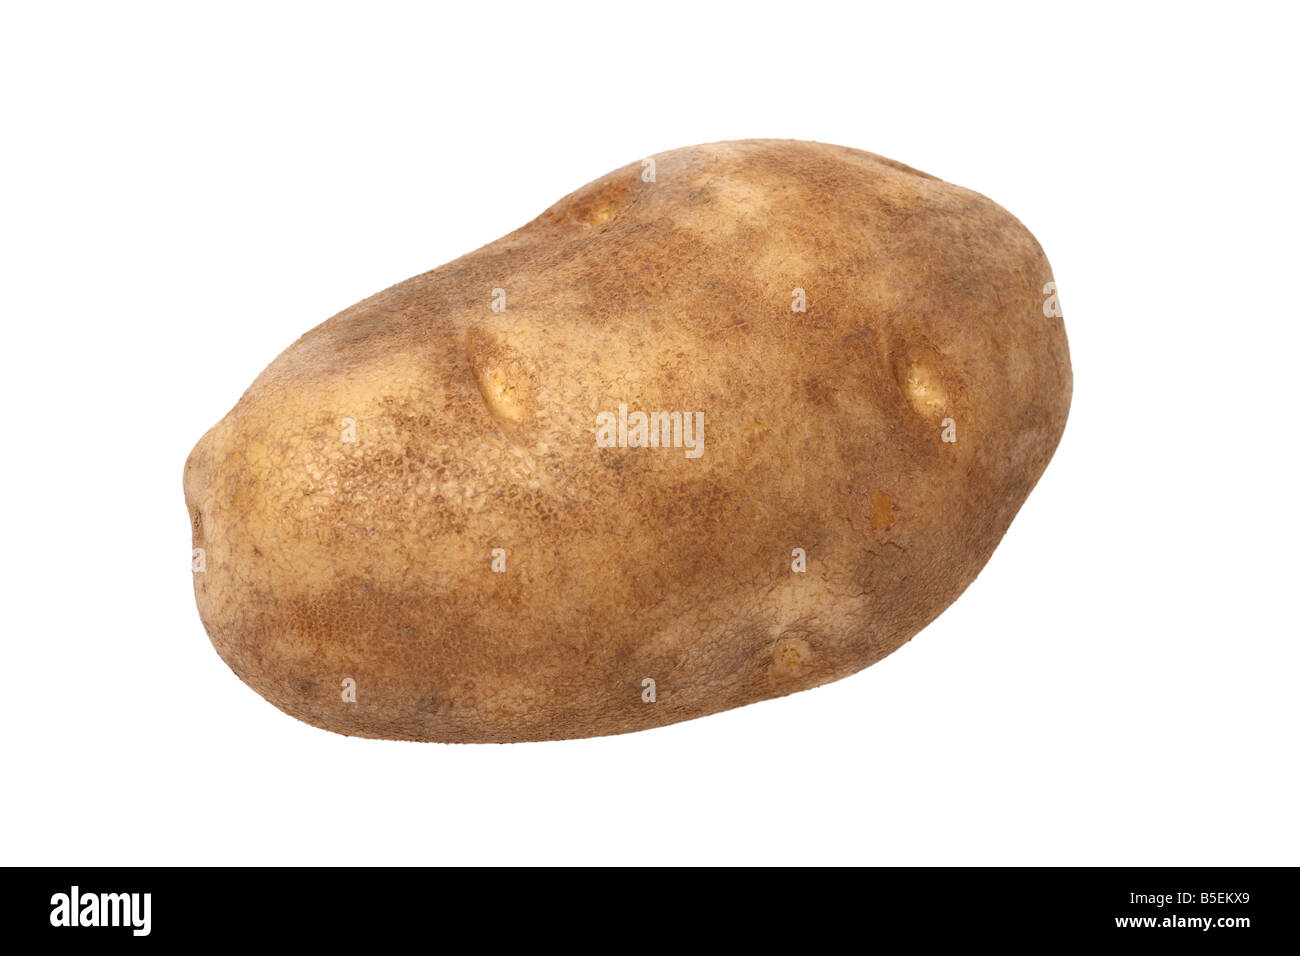 Potato cutout on white background Stock Photo